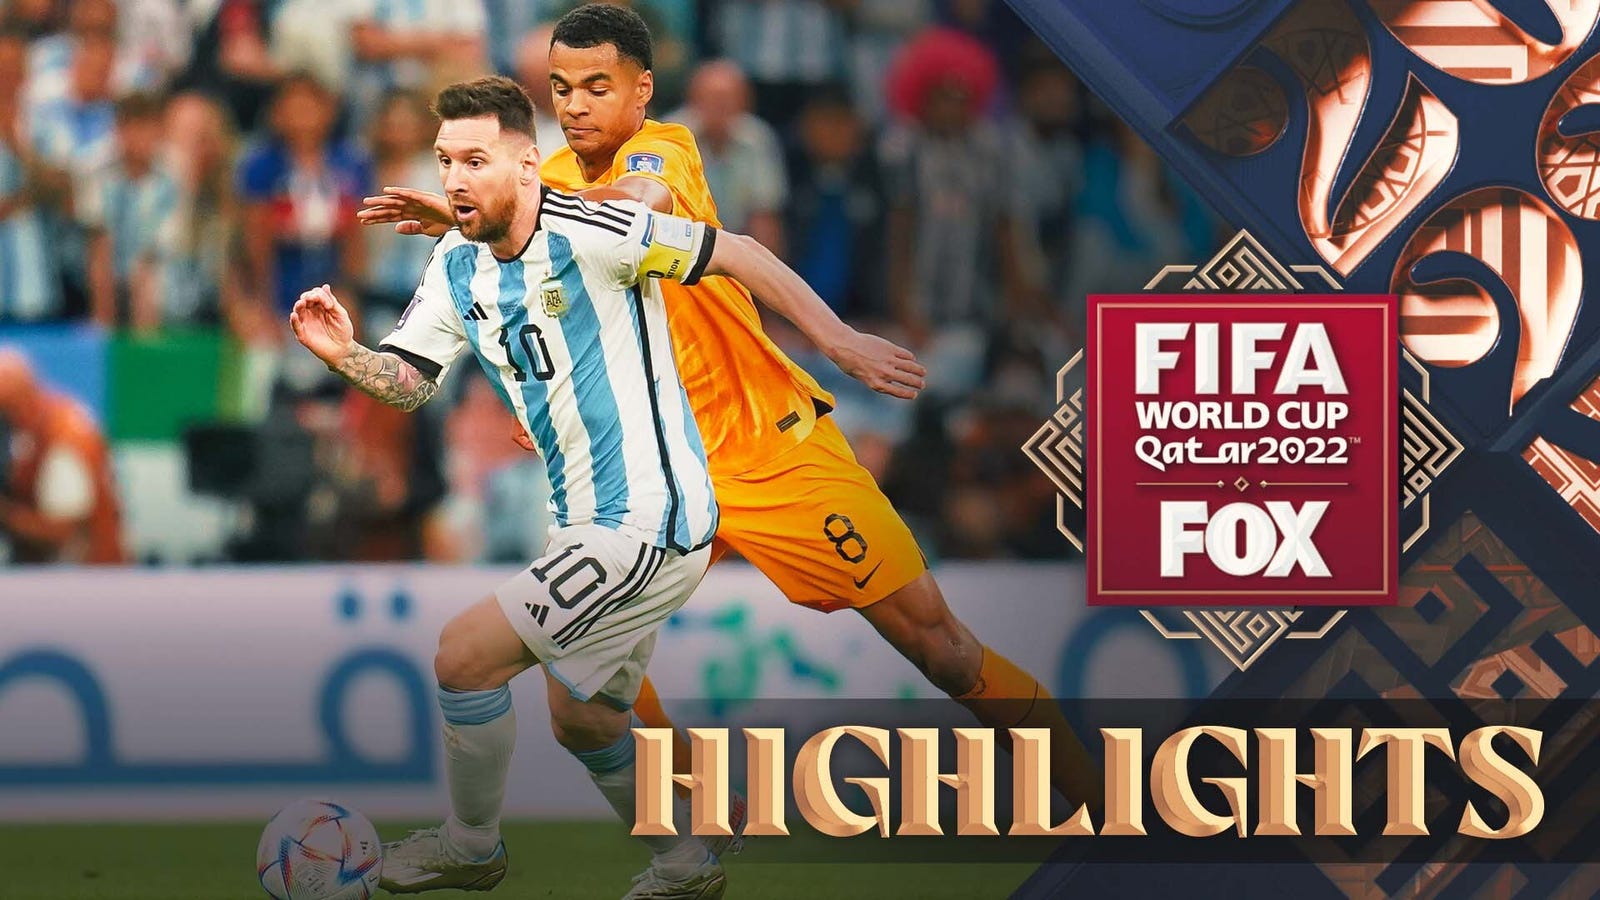 Holland vs Argentina highlights